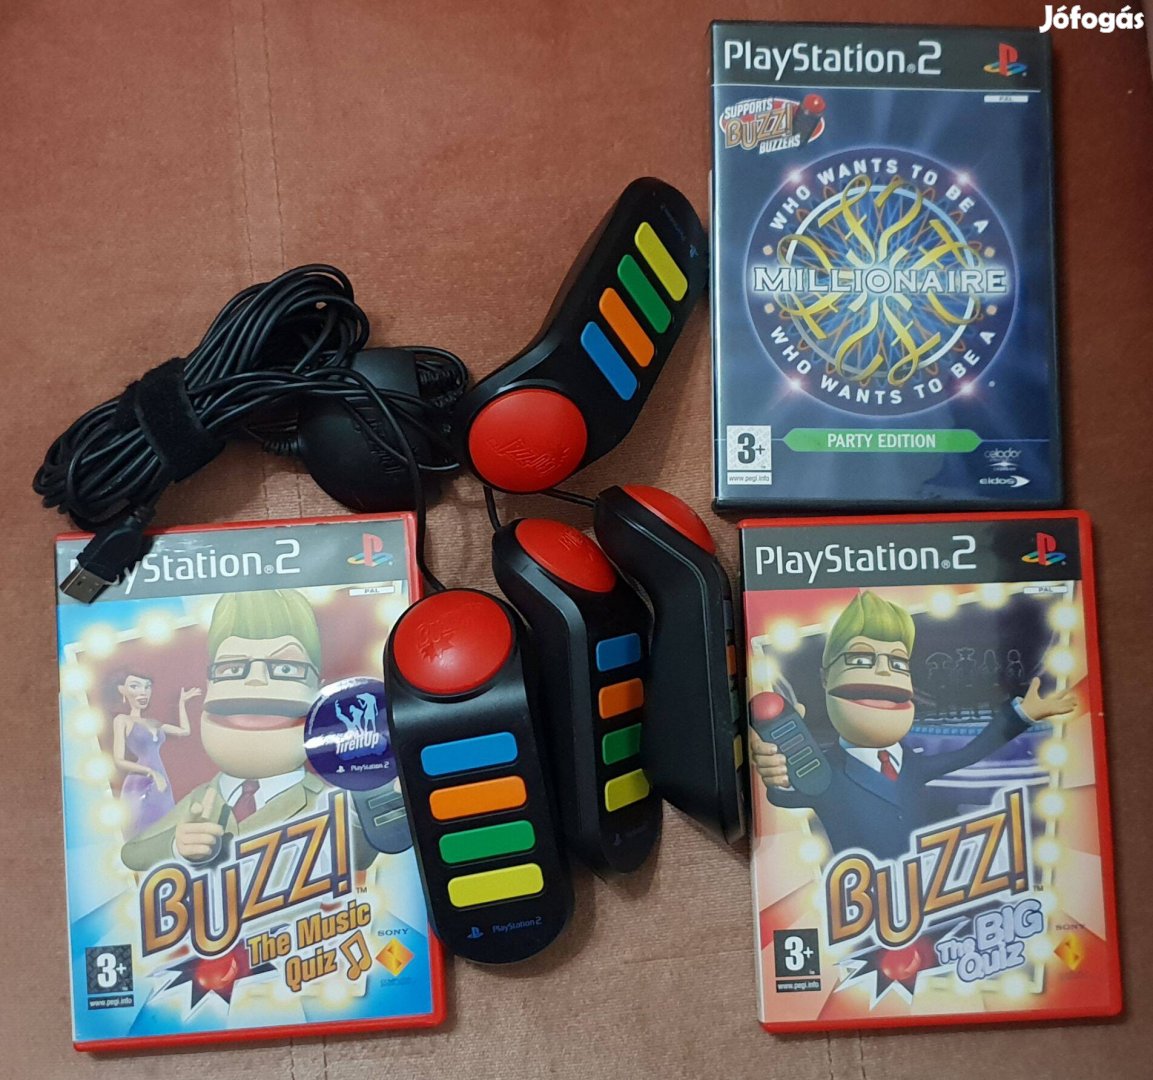 Ps 2 Buzz kontroller szett eredeti Playstation 2 lemezekkel eladó